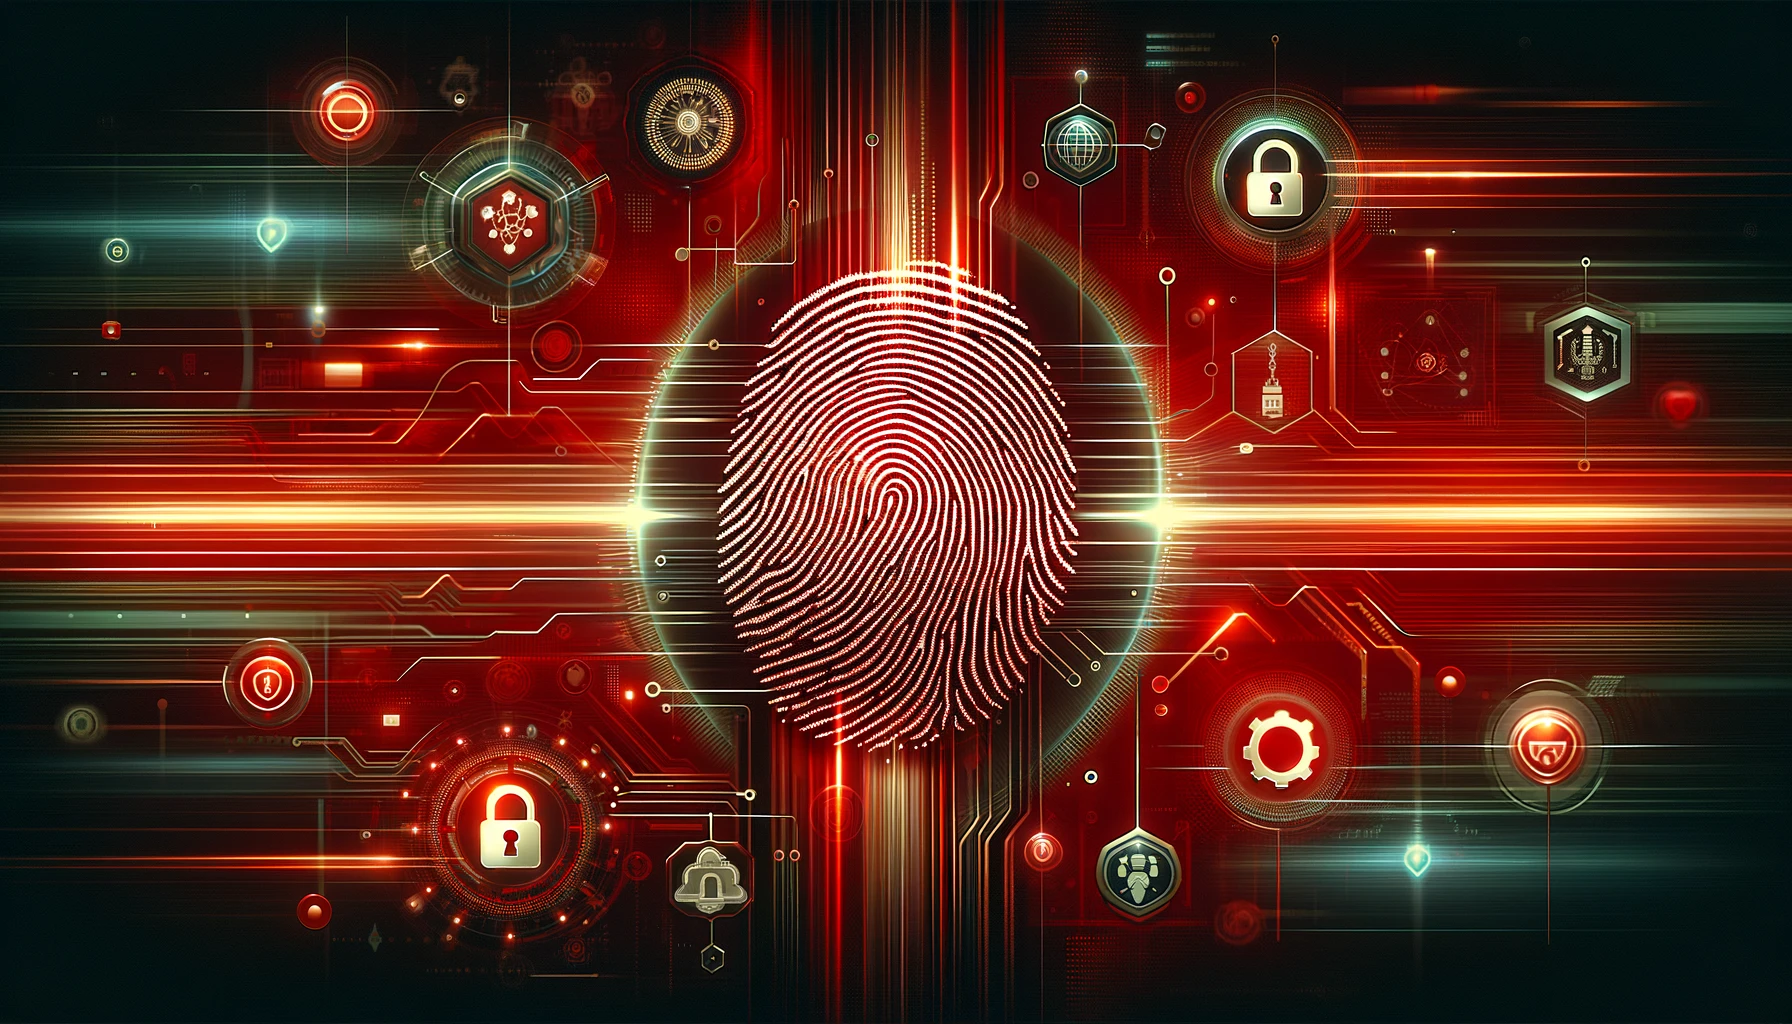 赤色の背景にデジタル指紋や暗号化されたデータストリームが描かれたバナー画像